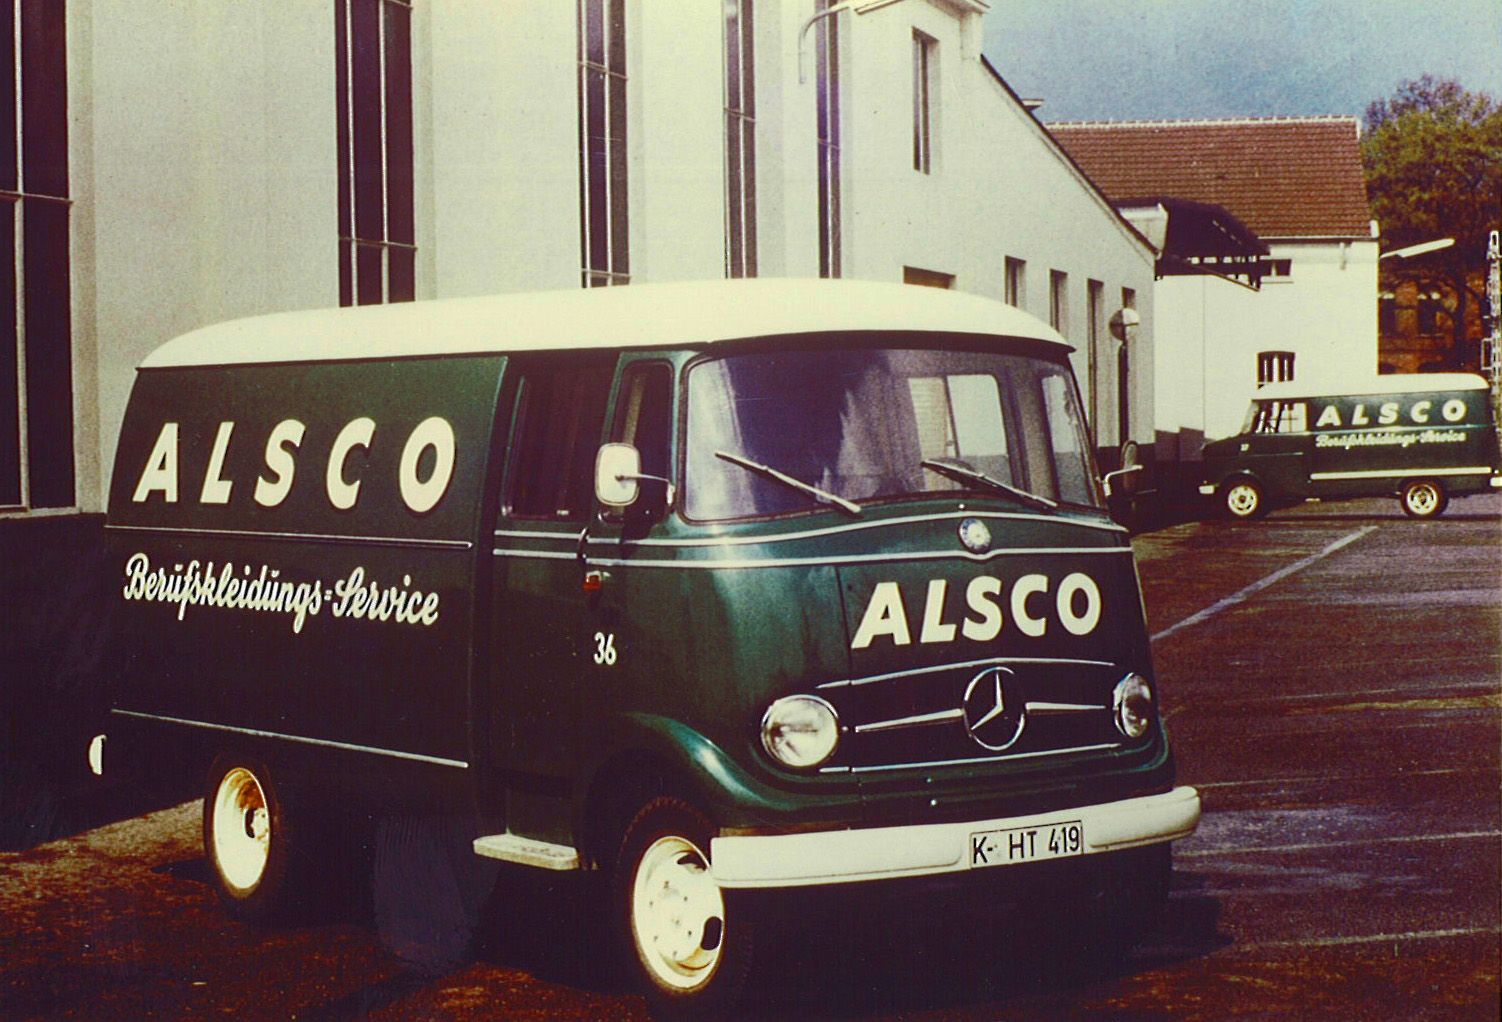 Alsco's History